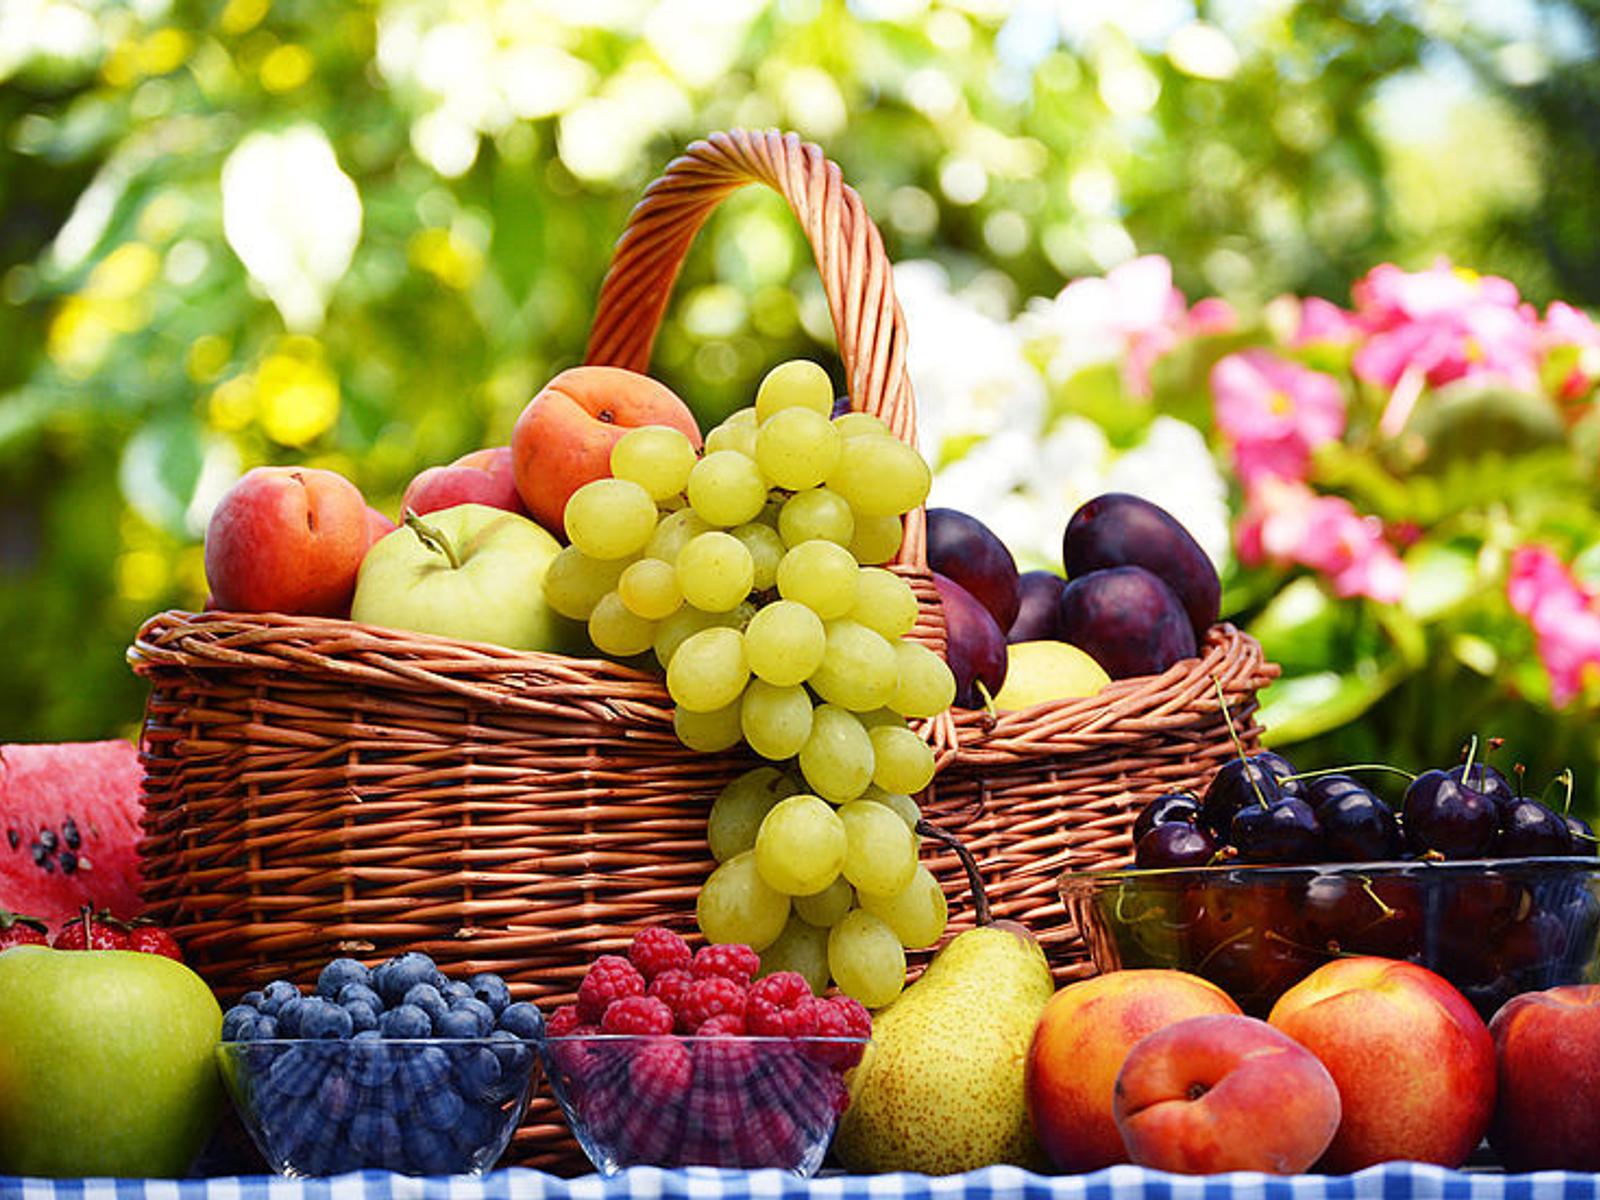 Fructoseintoleranz » Ernährungsliste & Tipps